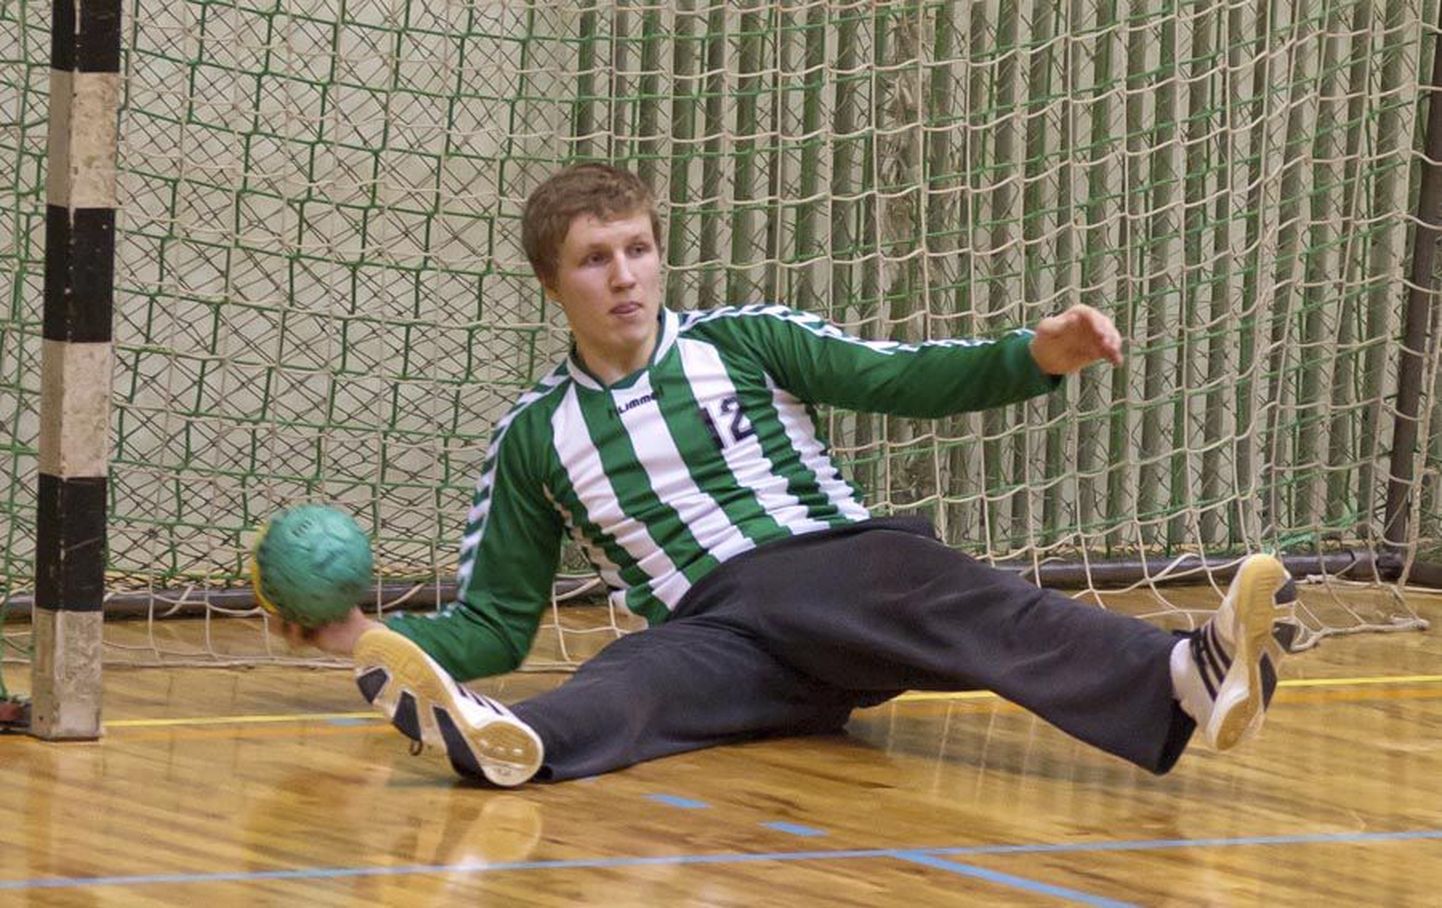 Eesti A-klassi käsipalli meistrivõistluste parimaks väravavahiks nimetati Rasmus Ots Viljandi spordikoolist.